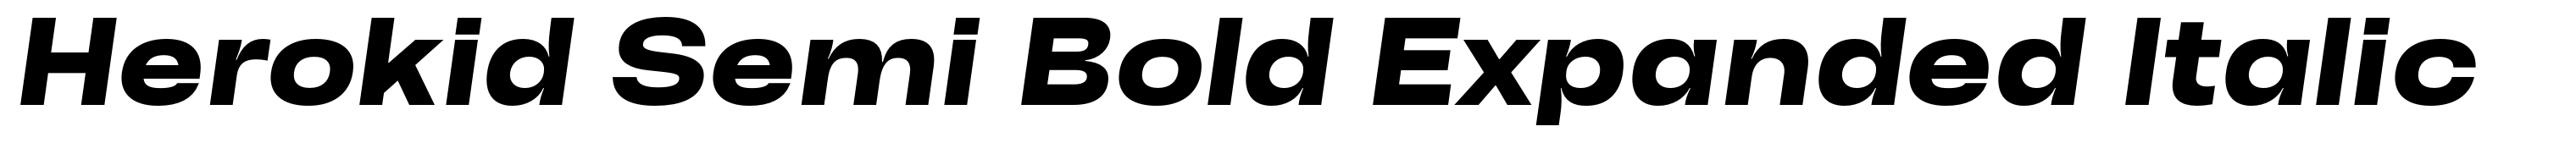 Herokid Semi Bold Expanded Italic